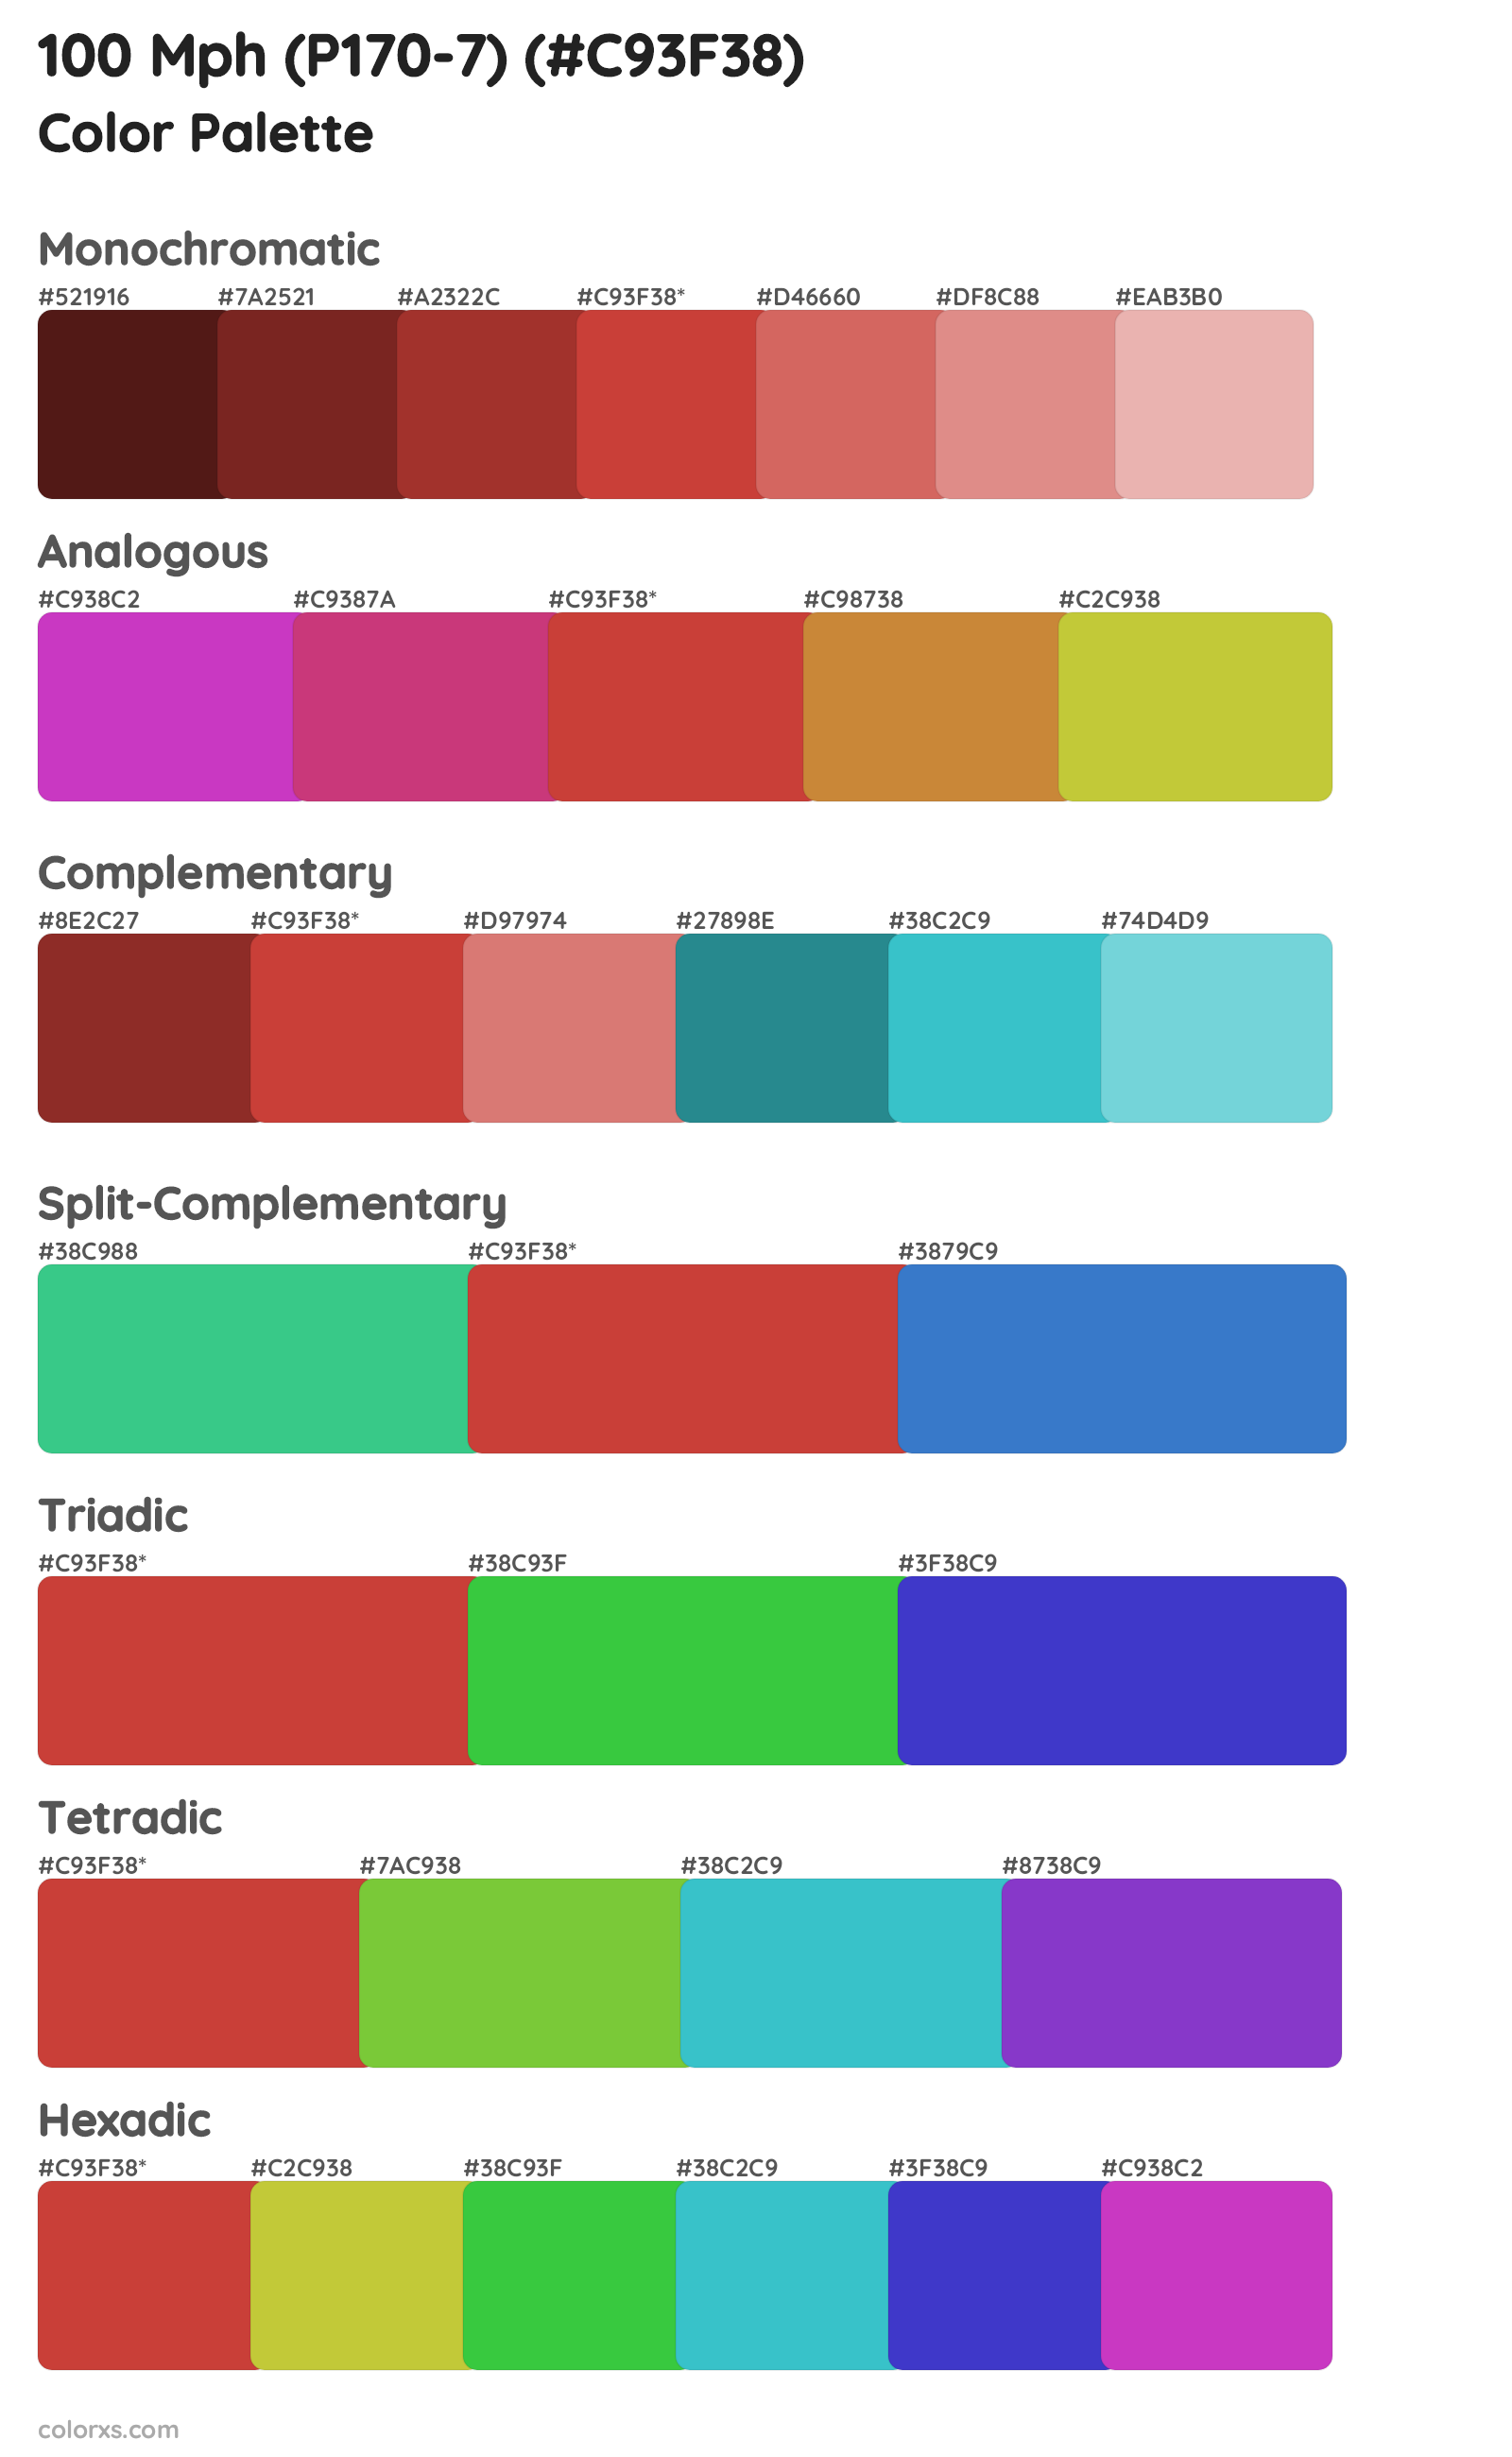 100 Mph (P170-7) Color Scheme Palettes